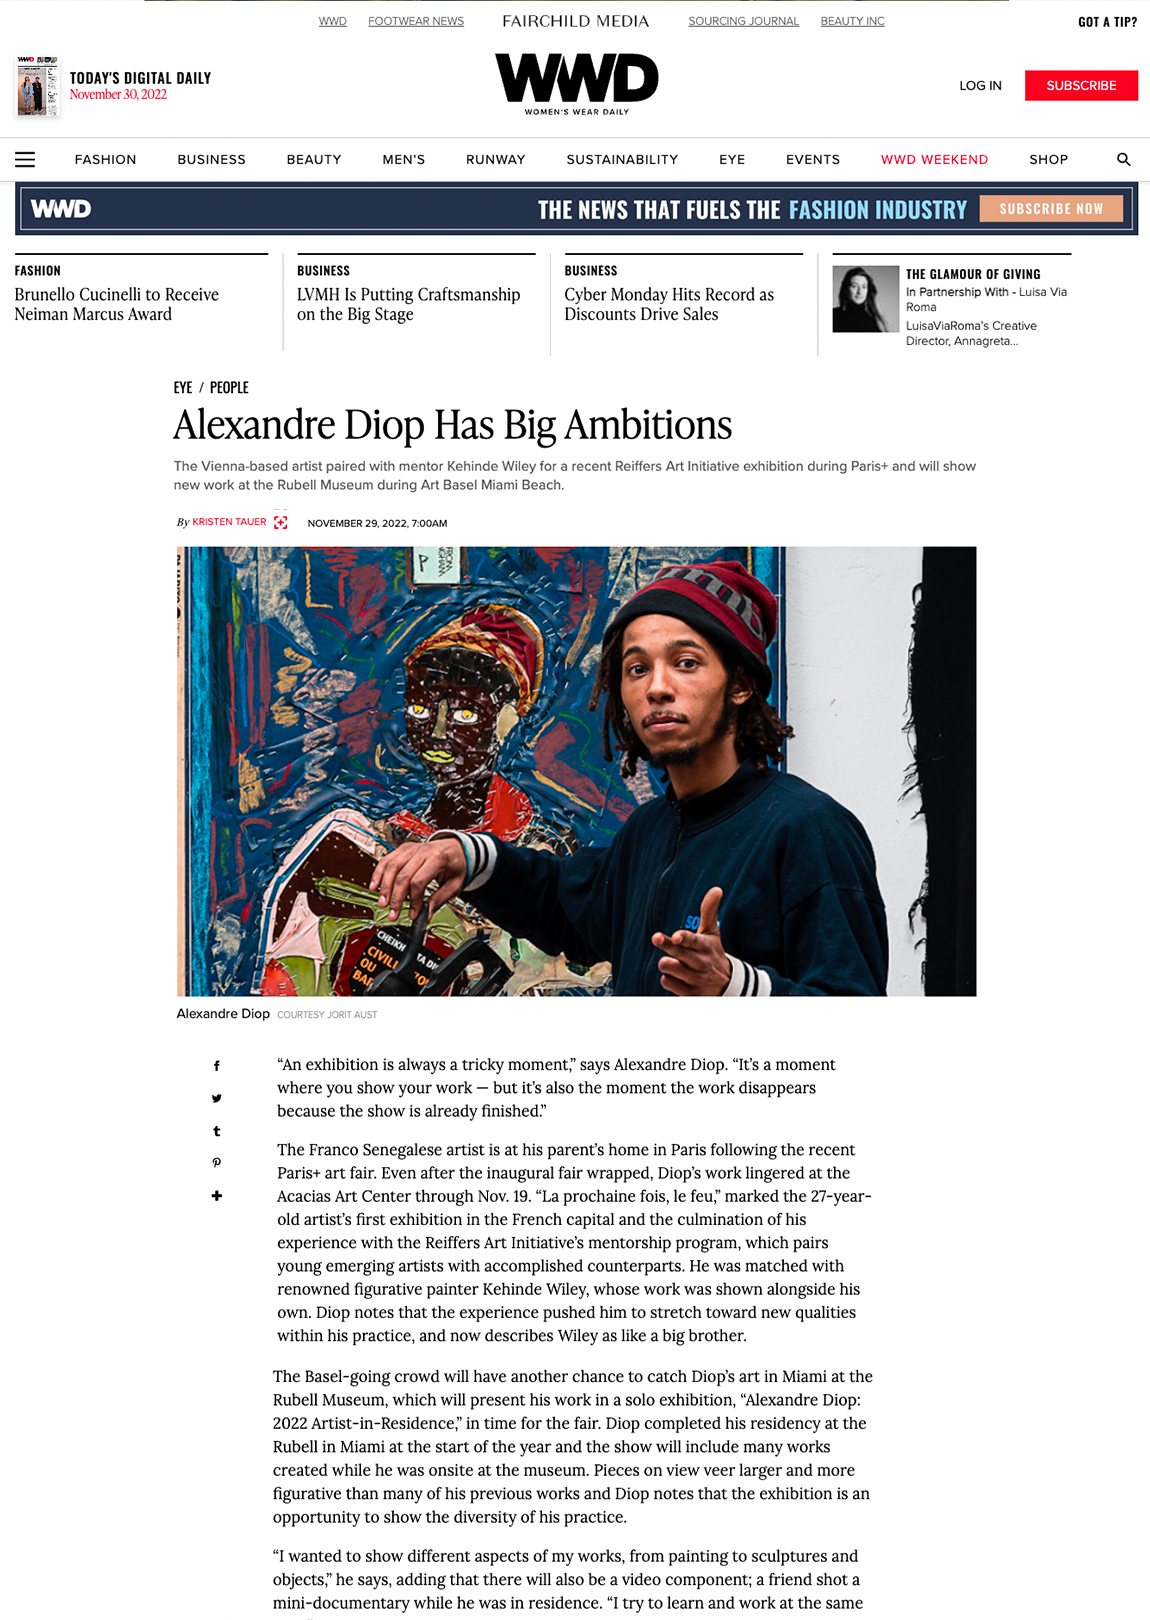 Alexandre Diop Has Big Ambitions